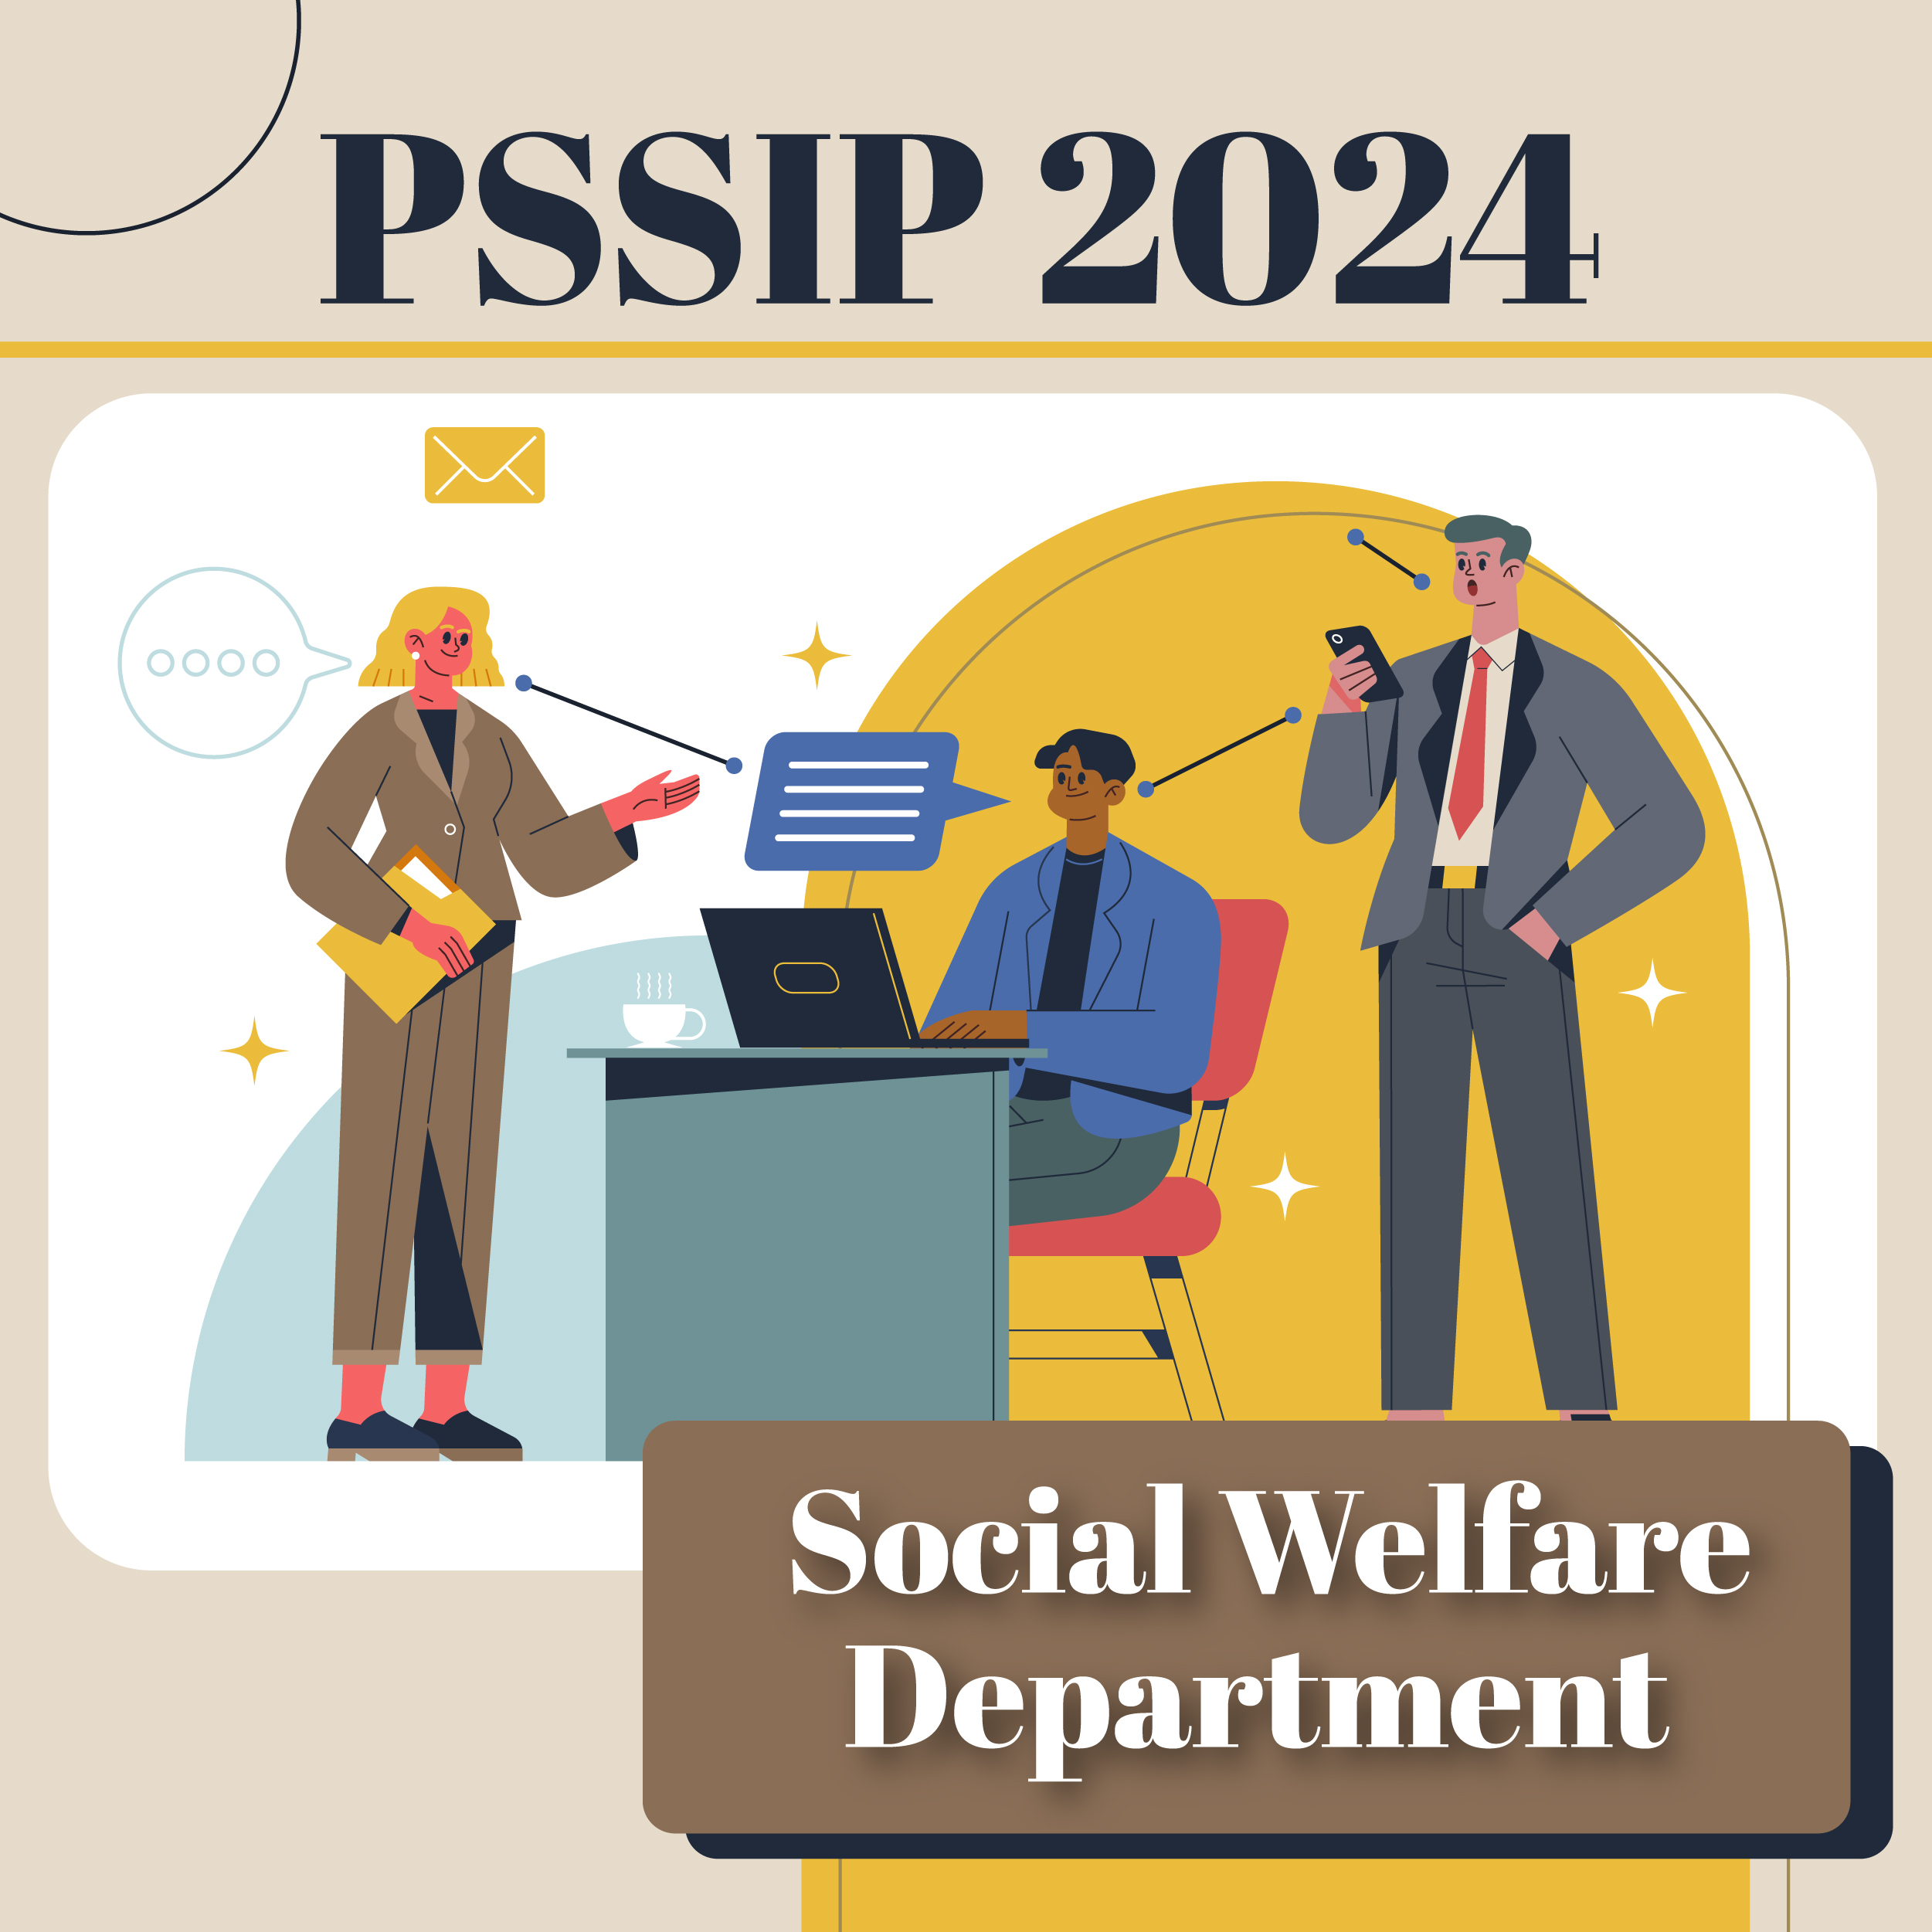 PSSIP2024 – Social Welfare Department (Psychology)